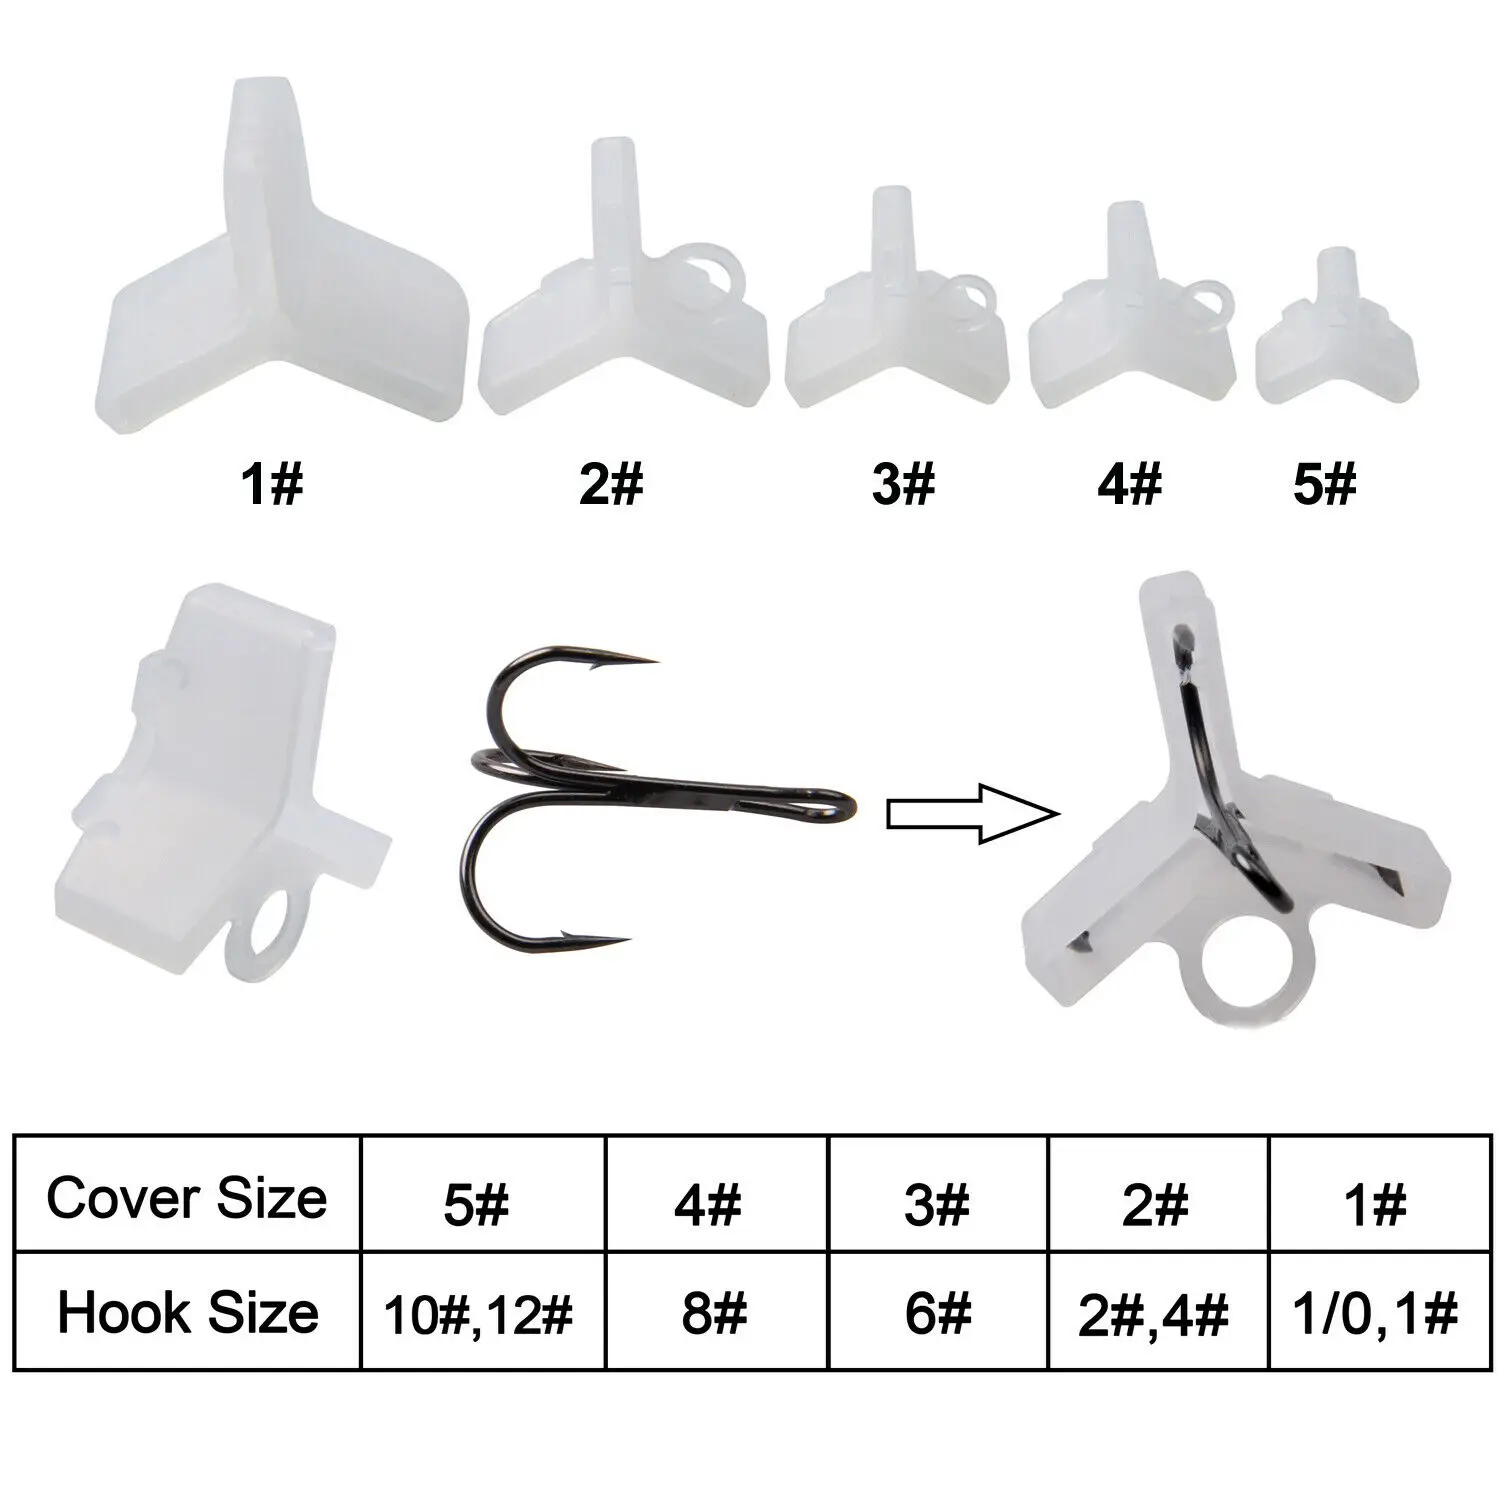 https://ae01.alicdn.com/kf/Head44437aad04c69b7ecae83c33b3d65a/100pcs-Treble-Fishing-Hooks-Protector-Cover-Set-Holder-Bonnets-Fishing-Lure-Hook-Size-1-5-Fishing.jpg